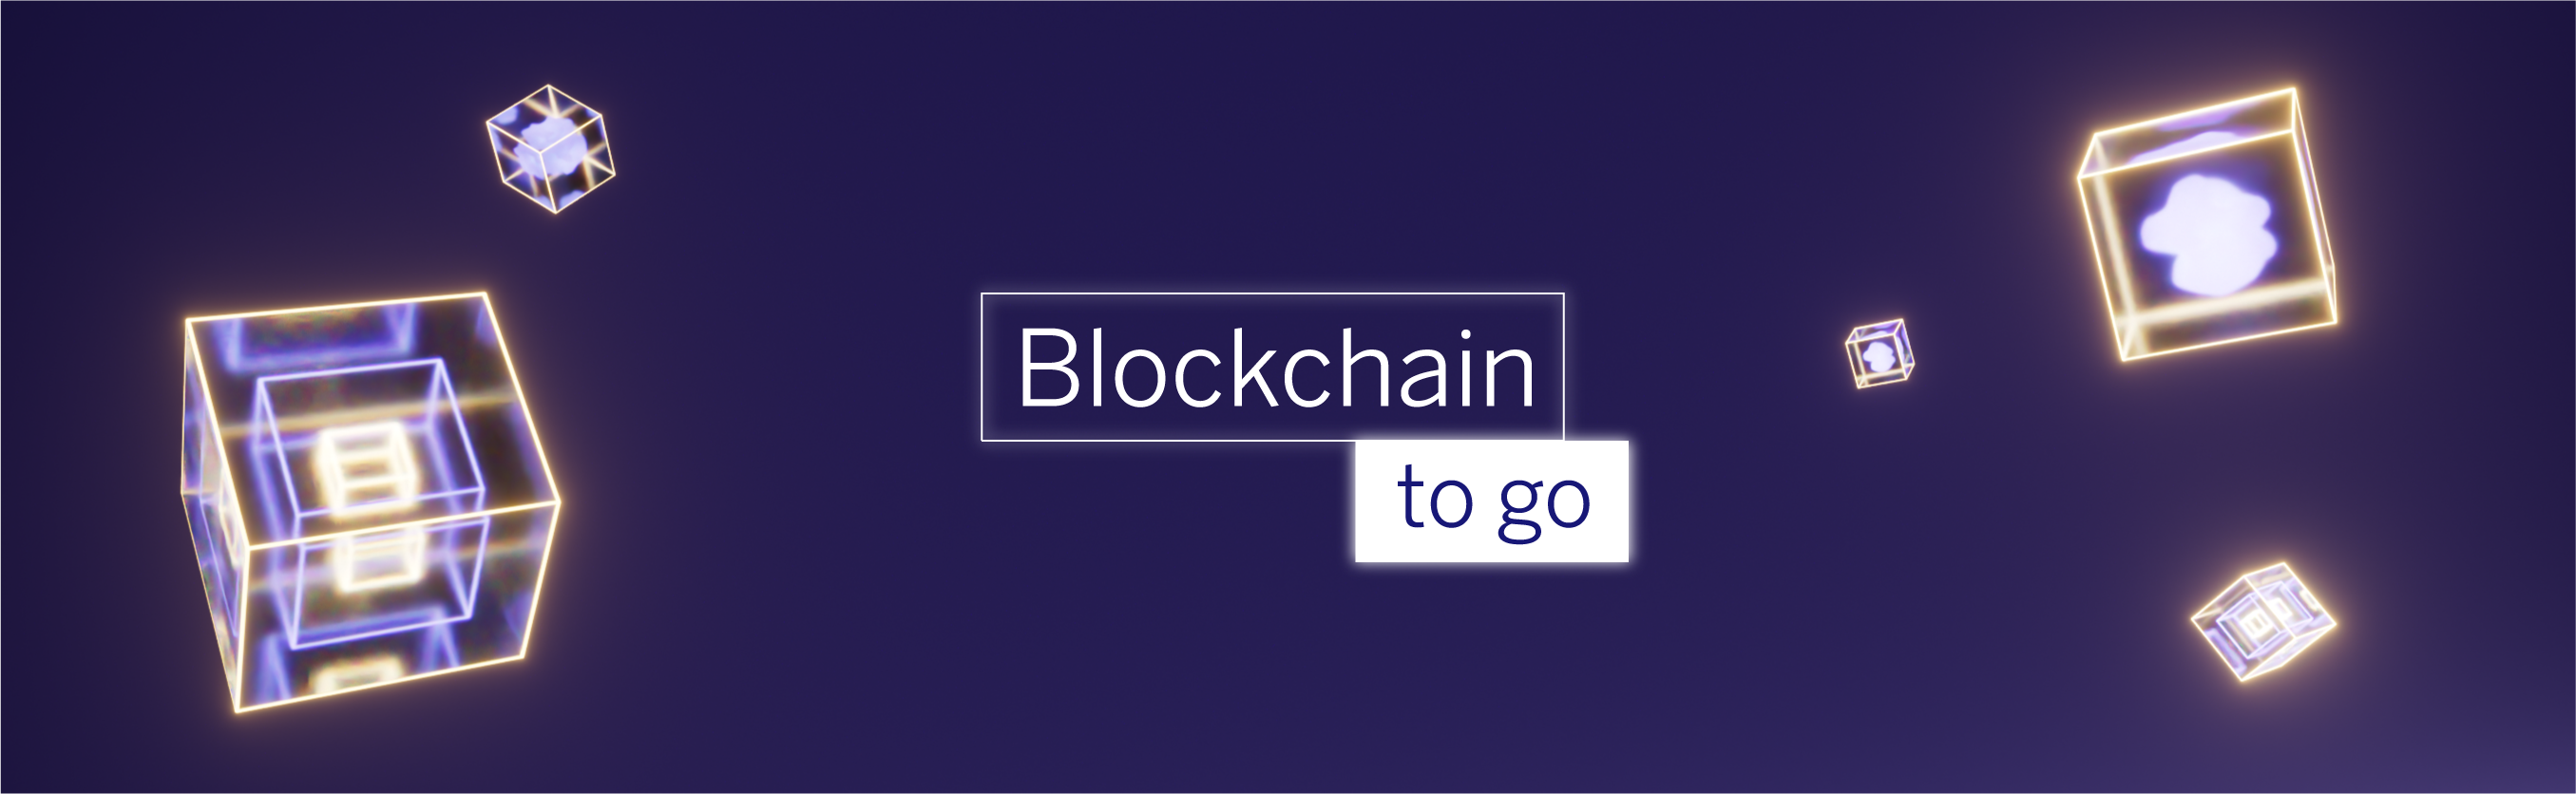 BBVA_Blockchain_to_go